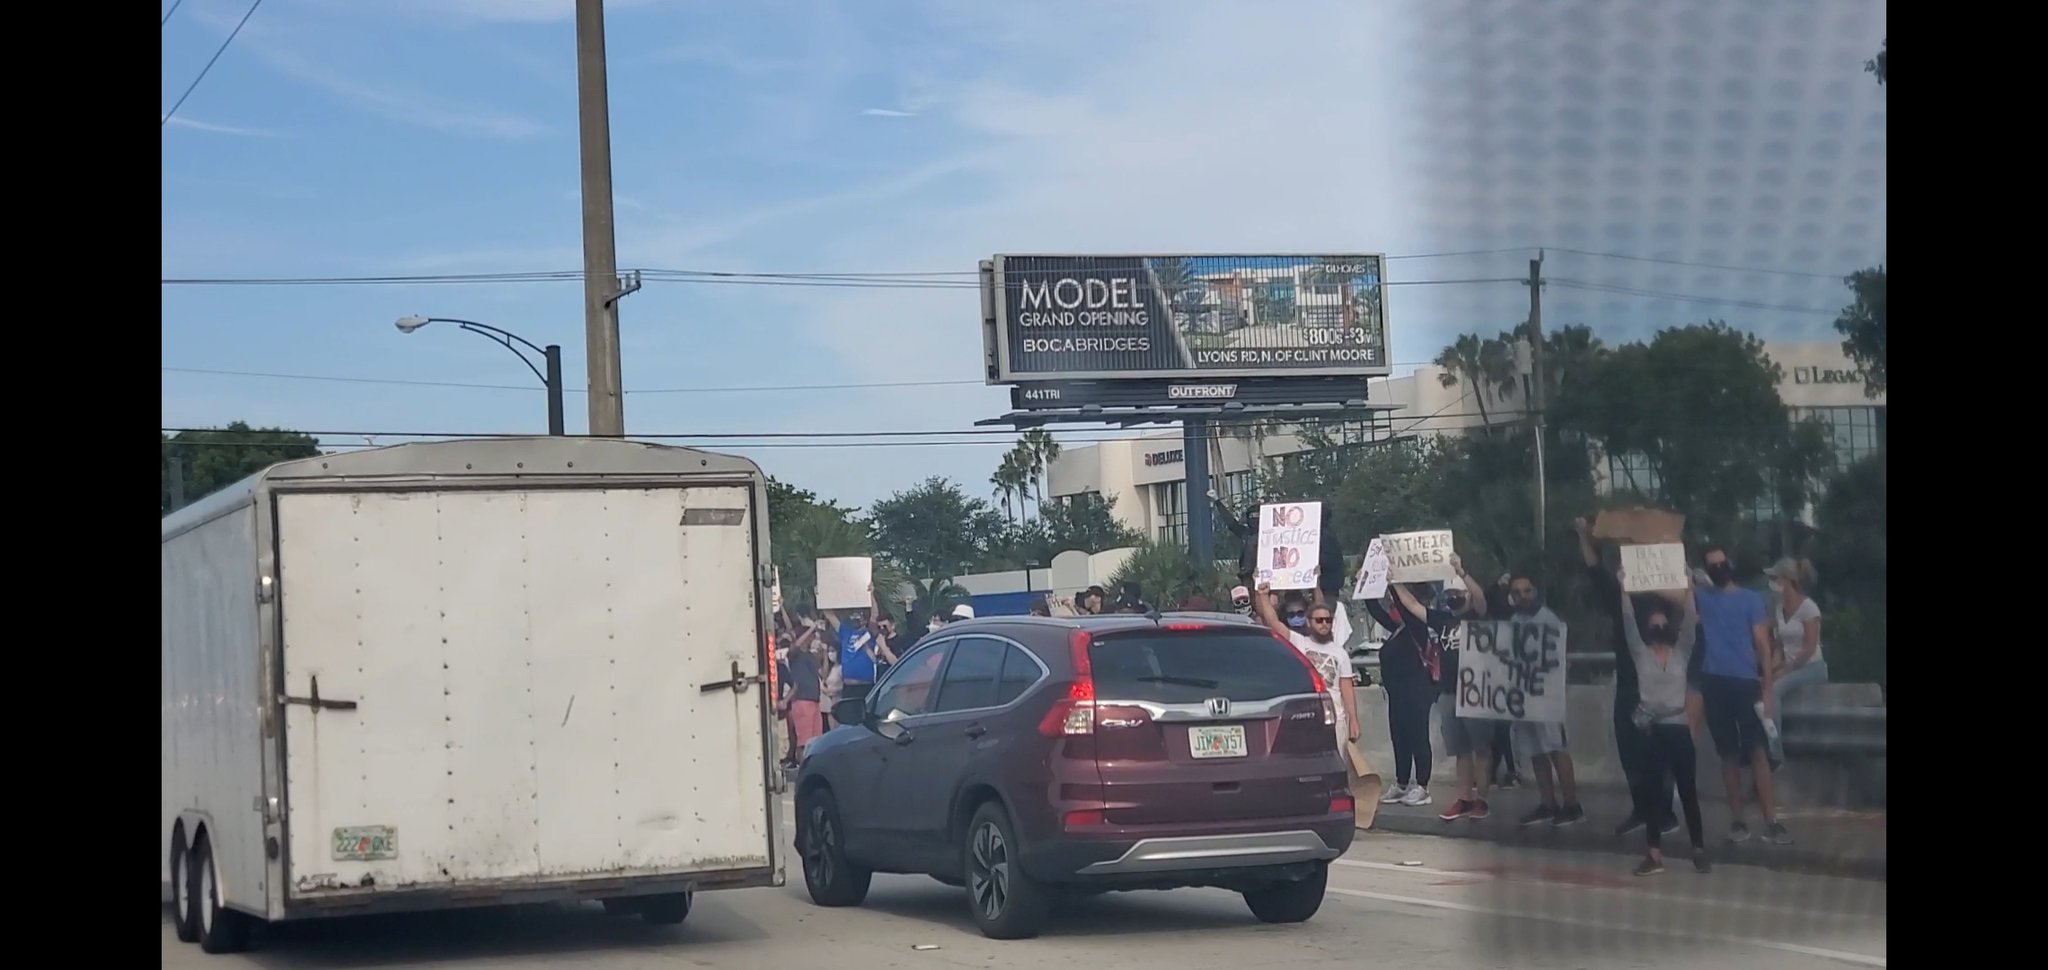 Protestors in Boca